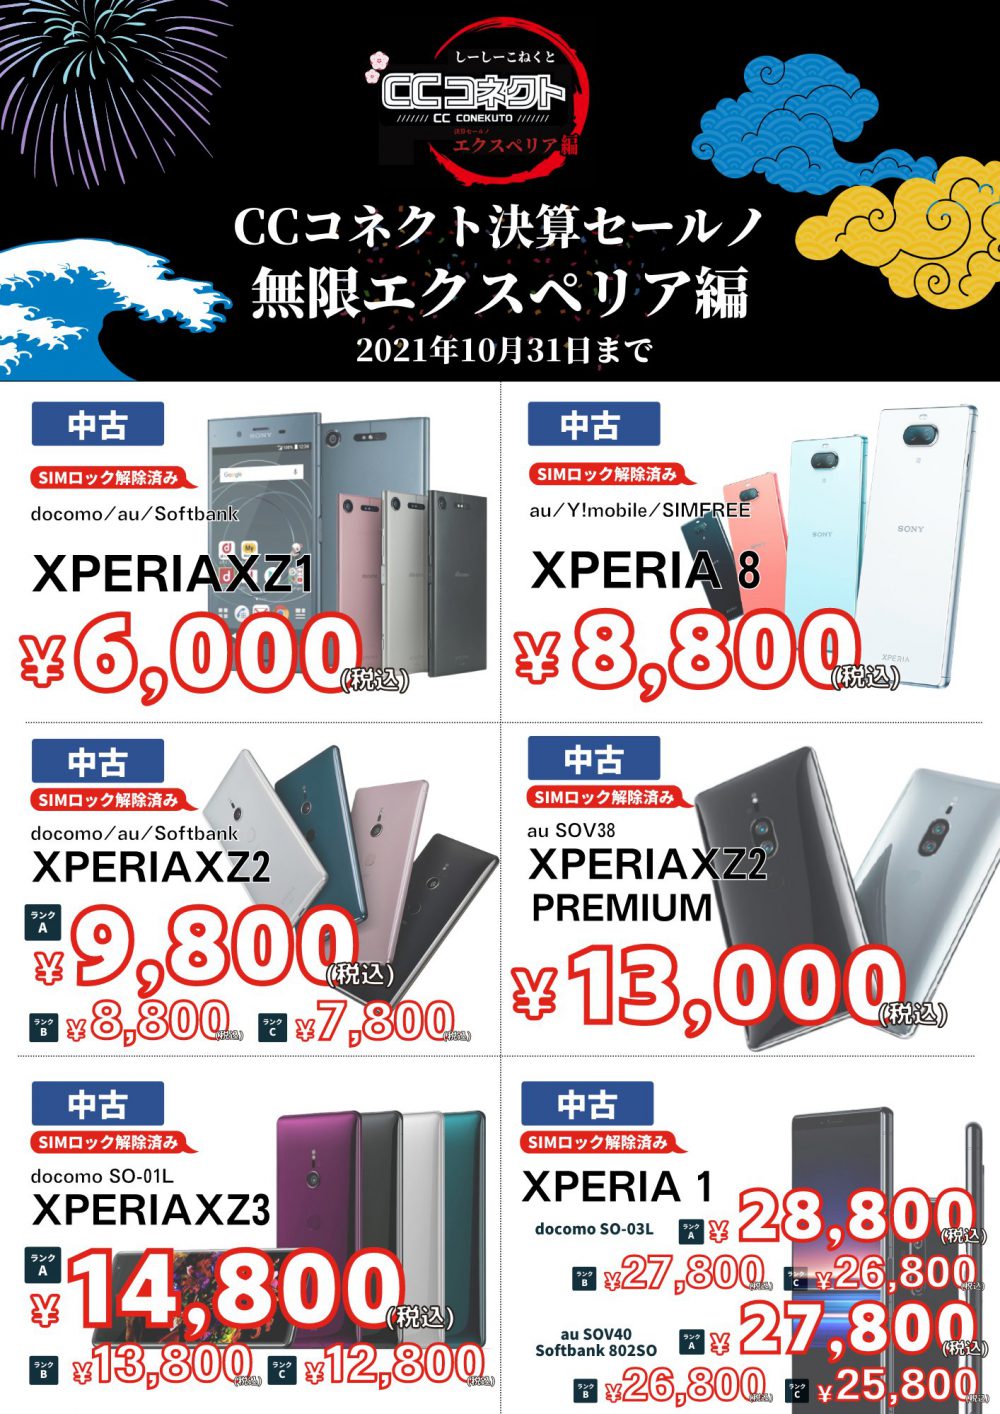 中古Xperia各種が格安セール中！XZ1が6,000円、1が25,800円ほか【CC 